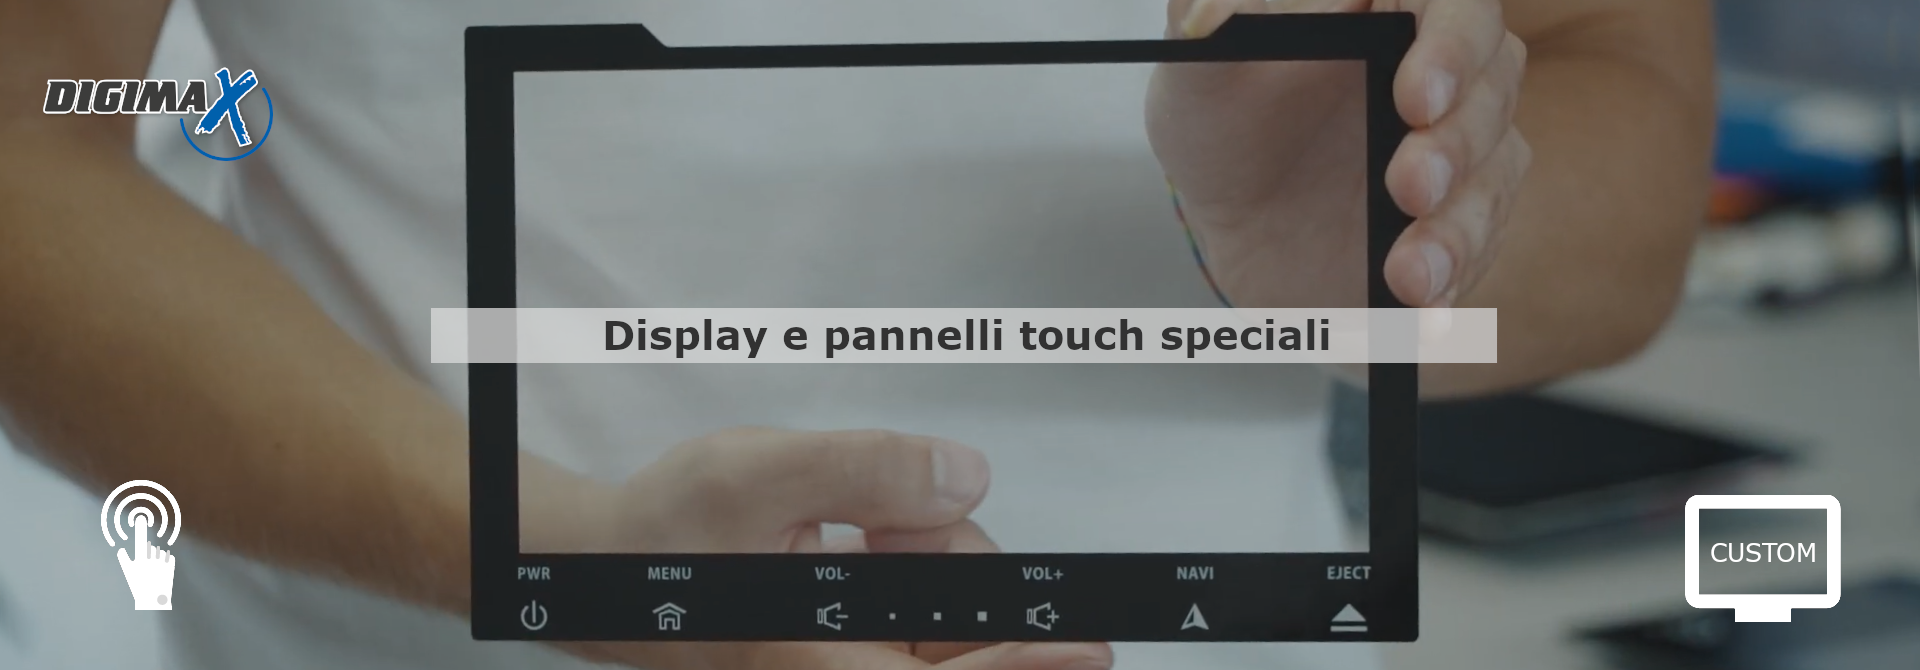 Display e pannelli touch speciali per applicazioni industriali